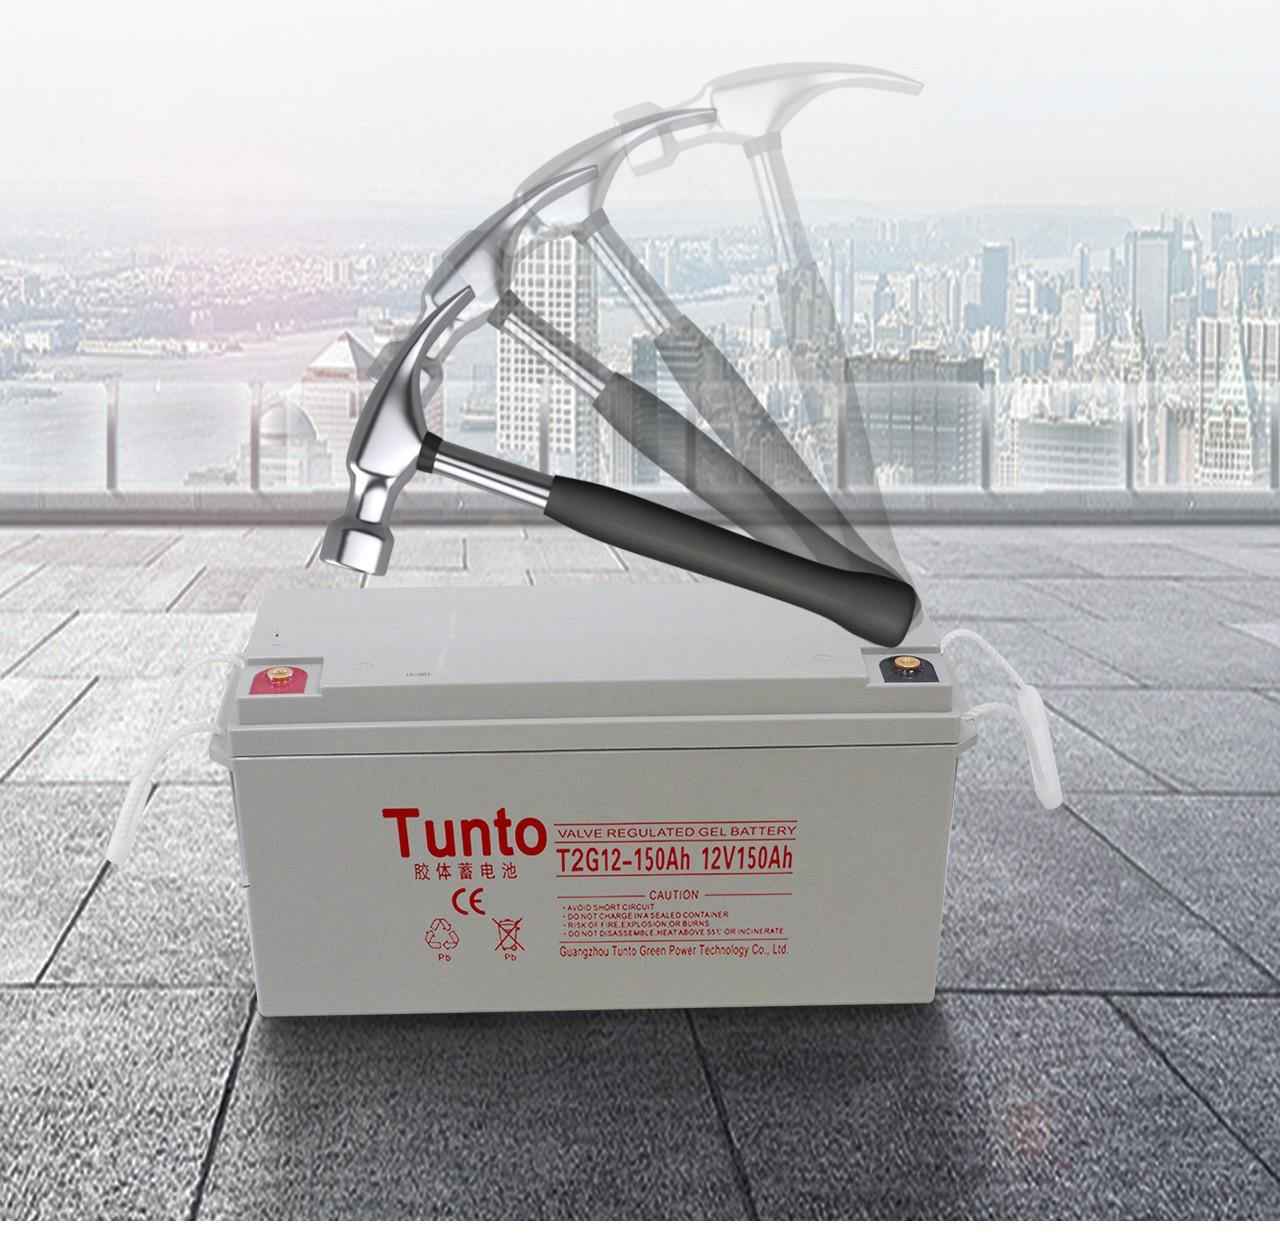 Tunto 30w bright solar lights manufacturer for garden-2